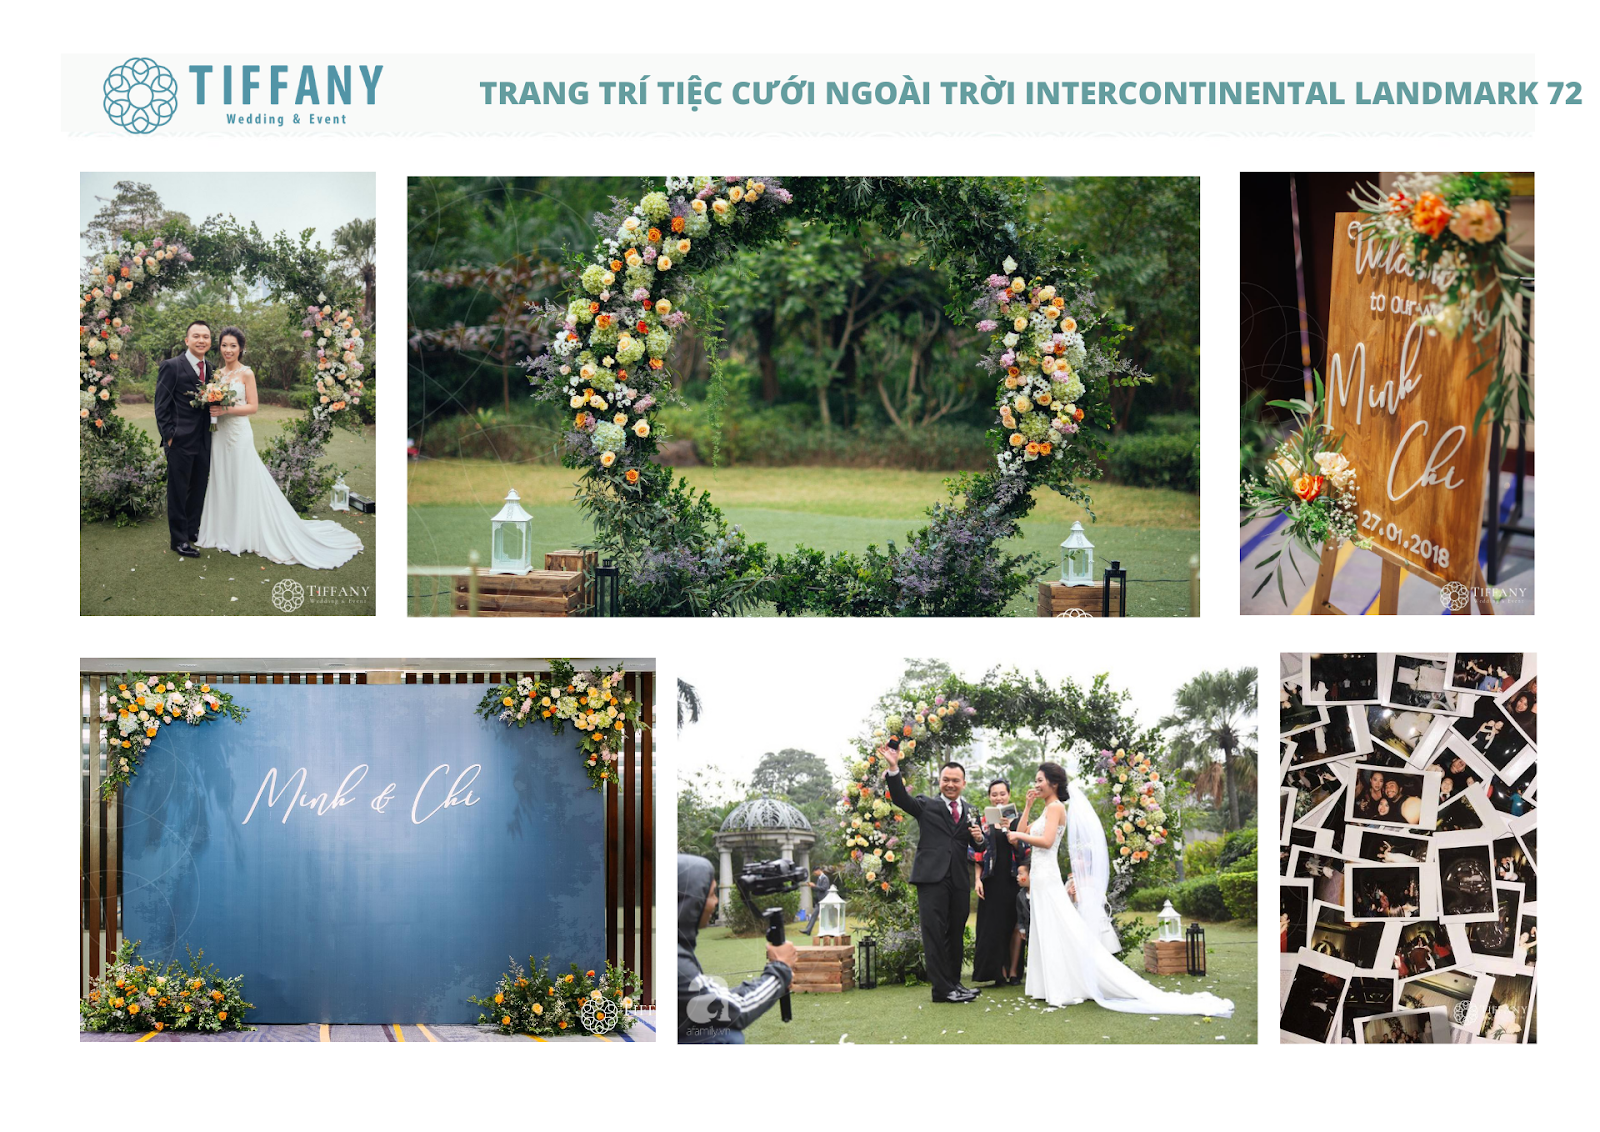 Hình ảnh trang trí tiệc cưới ngoài trời được thực hiện bởi Tiffany